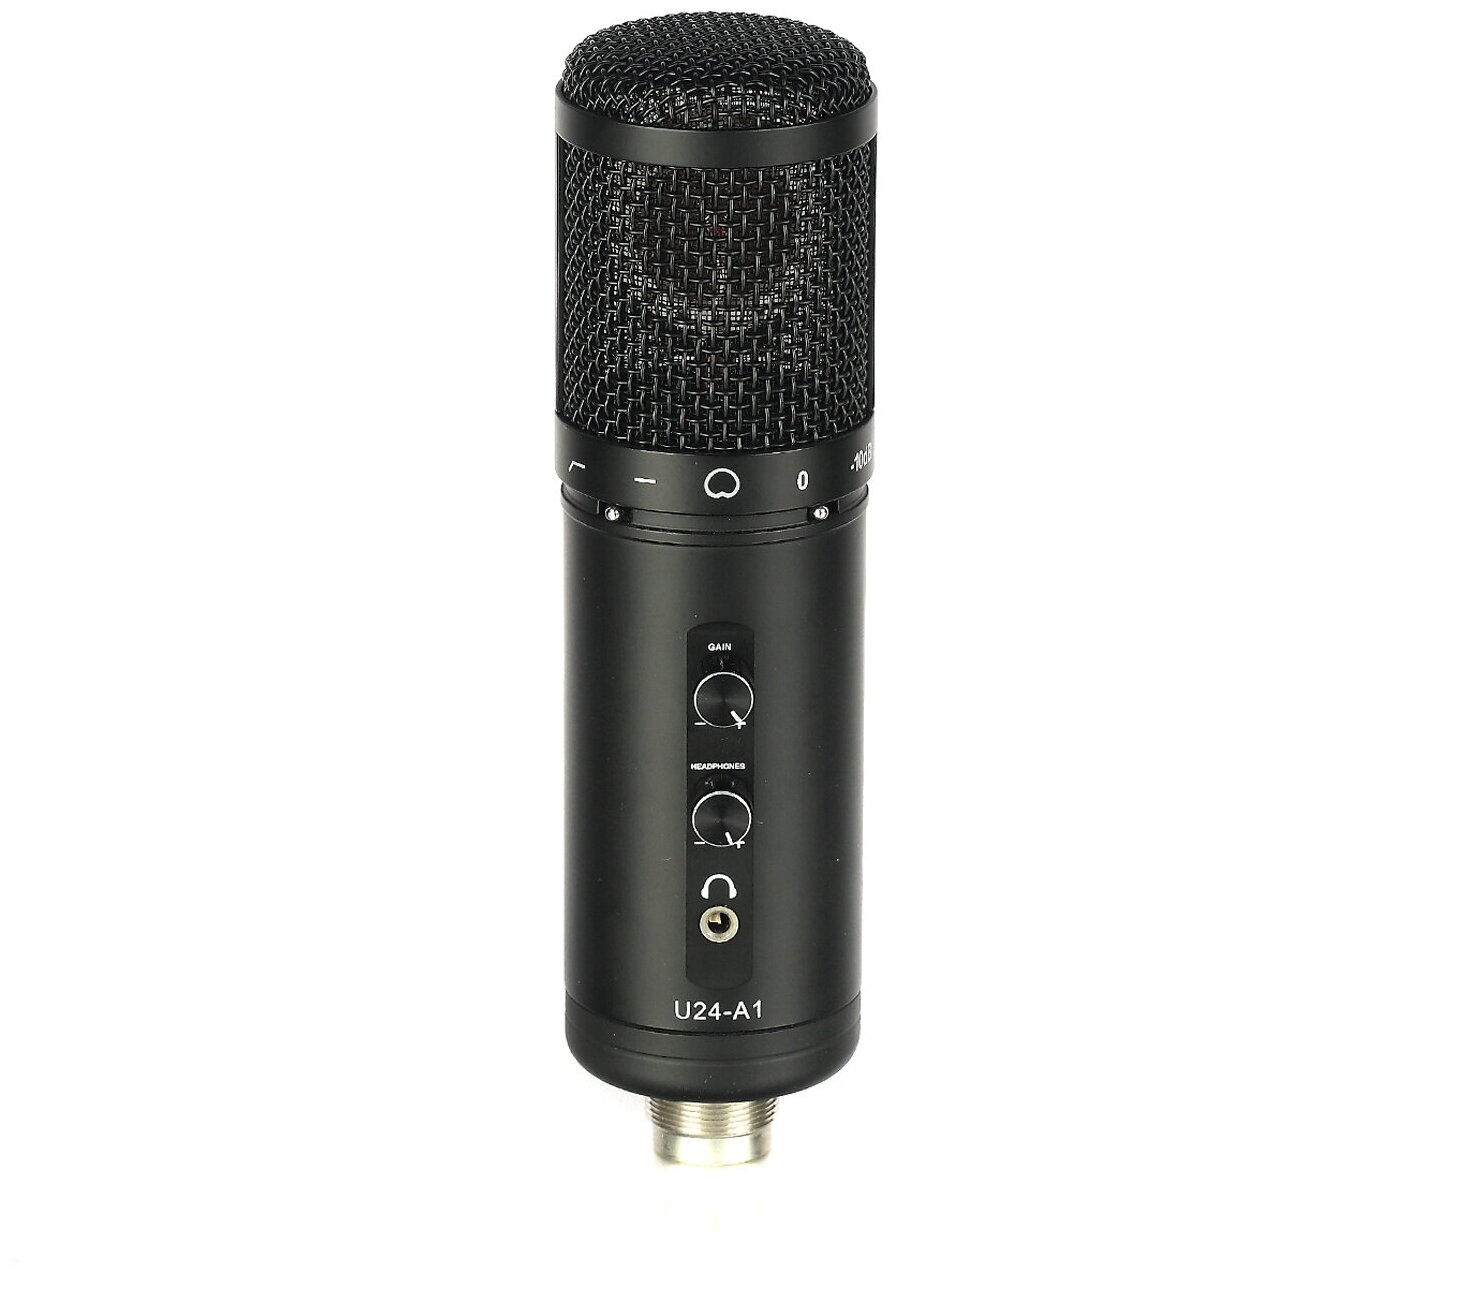 USB-микрофон Mice U24-A1 с мониторингом, цвет черный